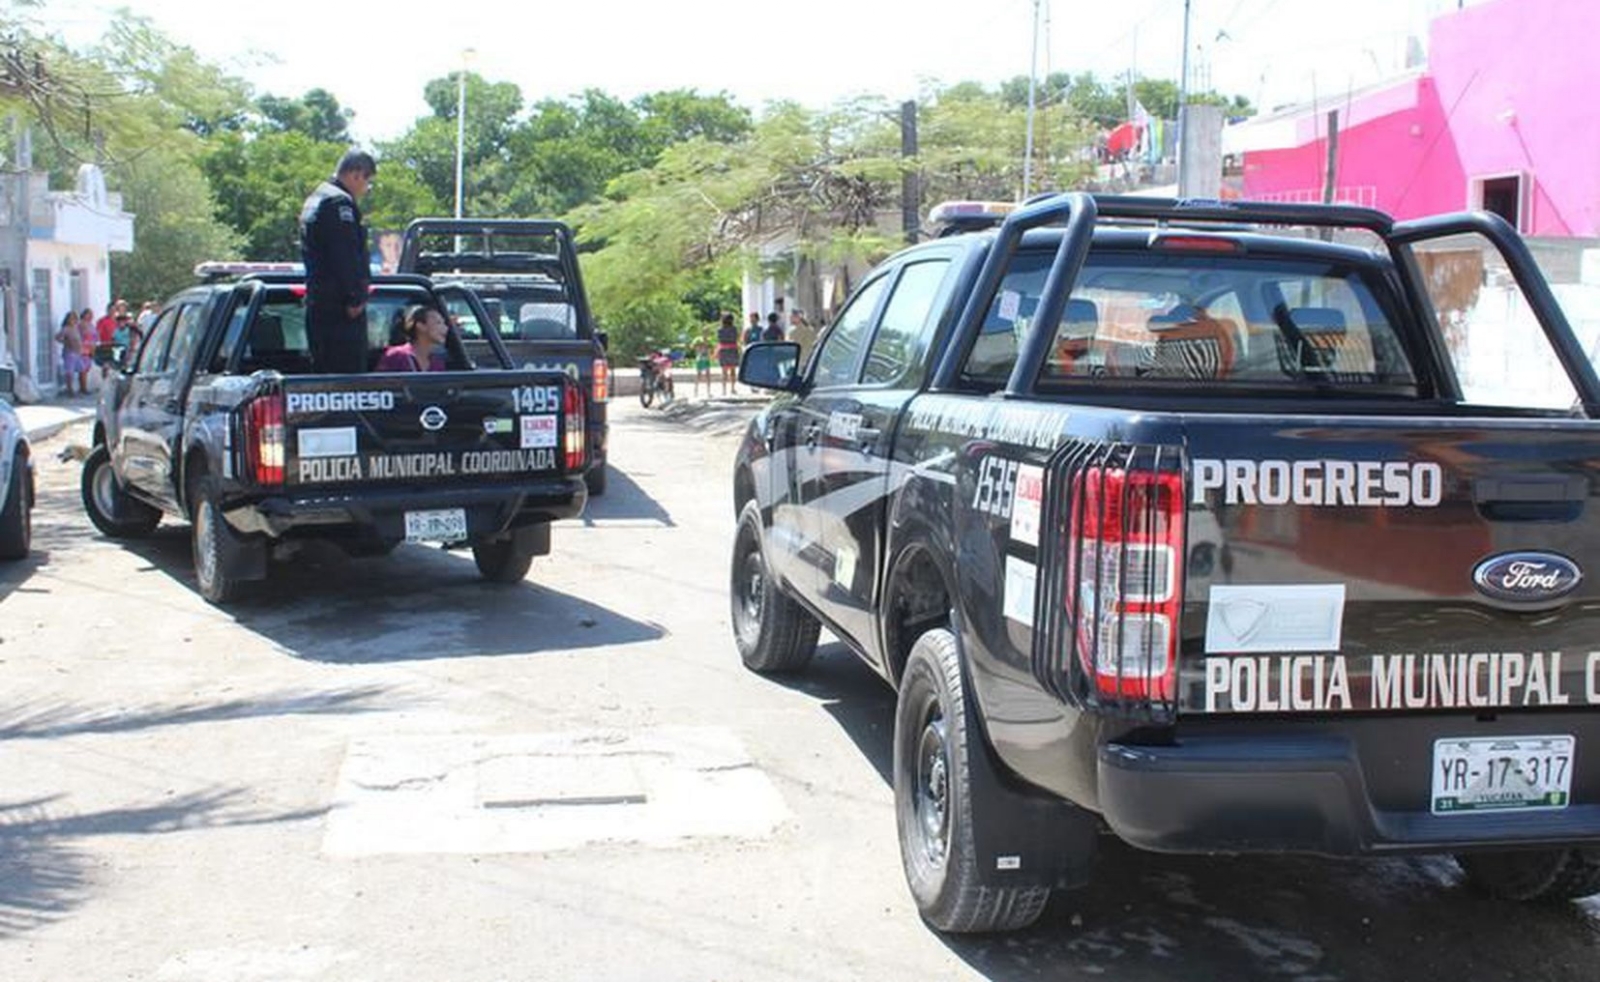 Habitantes de Progreso 'evidencian' los abusos de la Policía Municipal